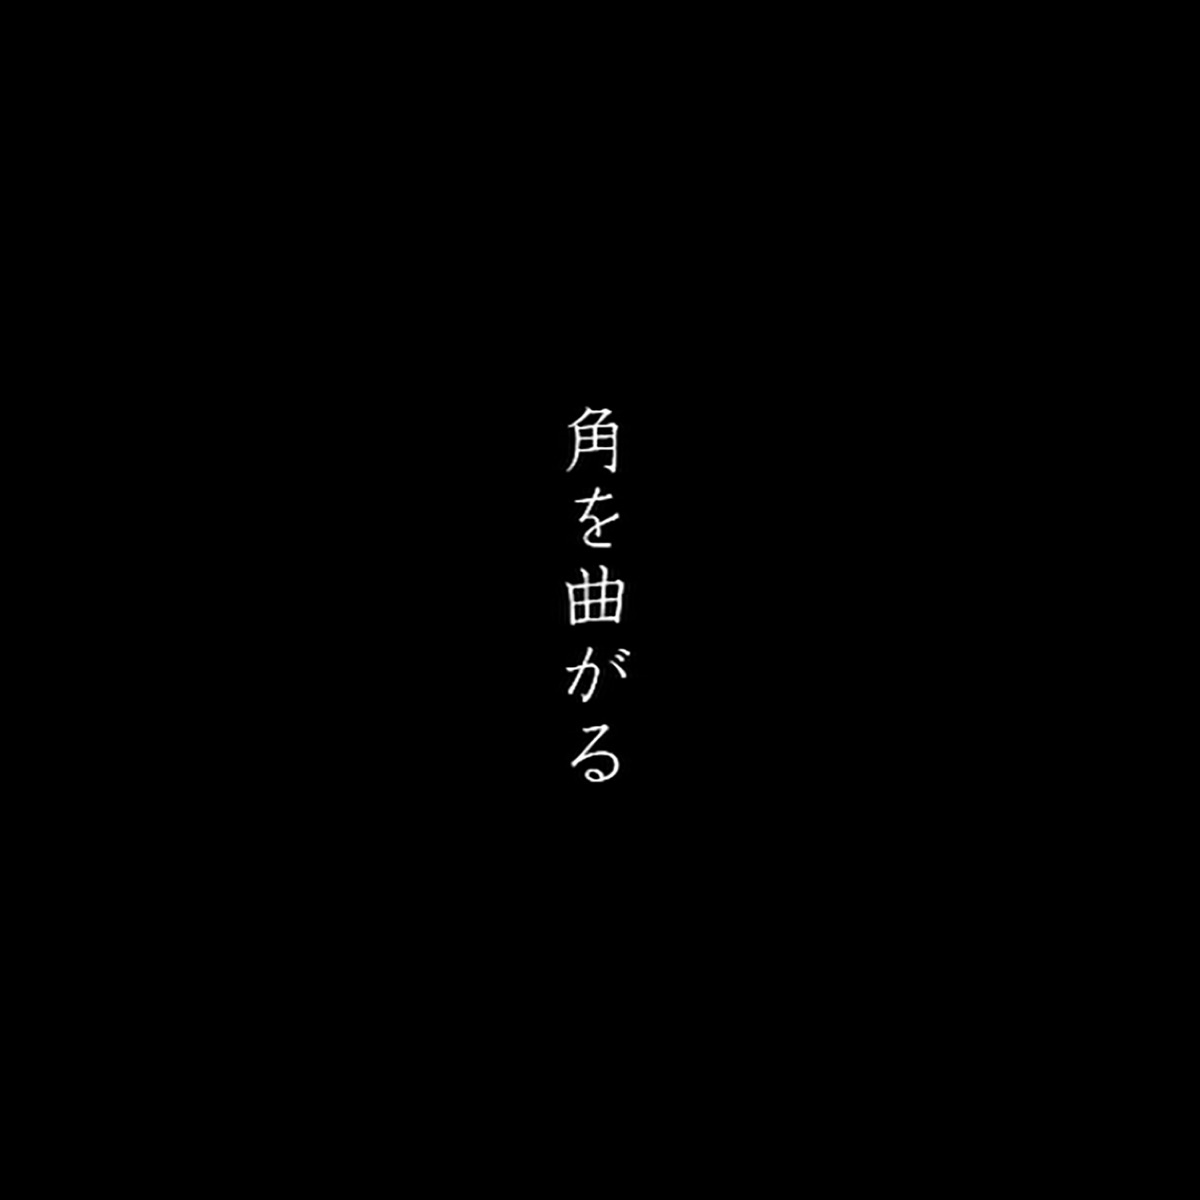 『欅坂46 - 角を曲がる』収録の『角を曲がる』ジャケット